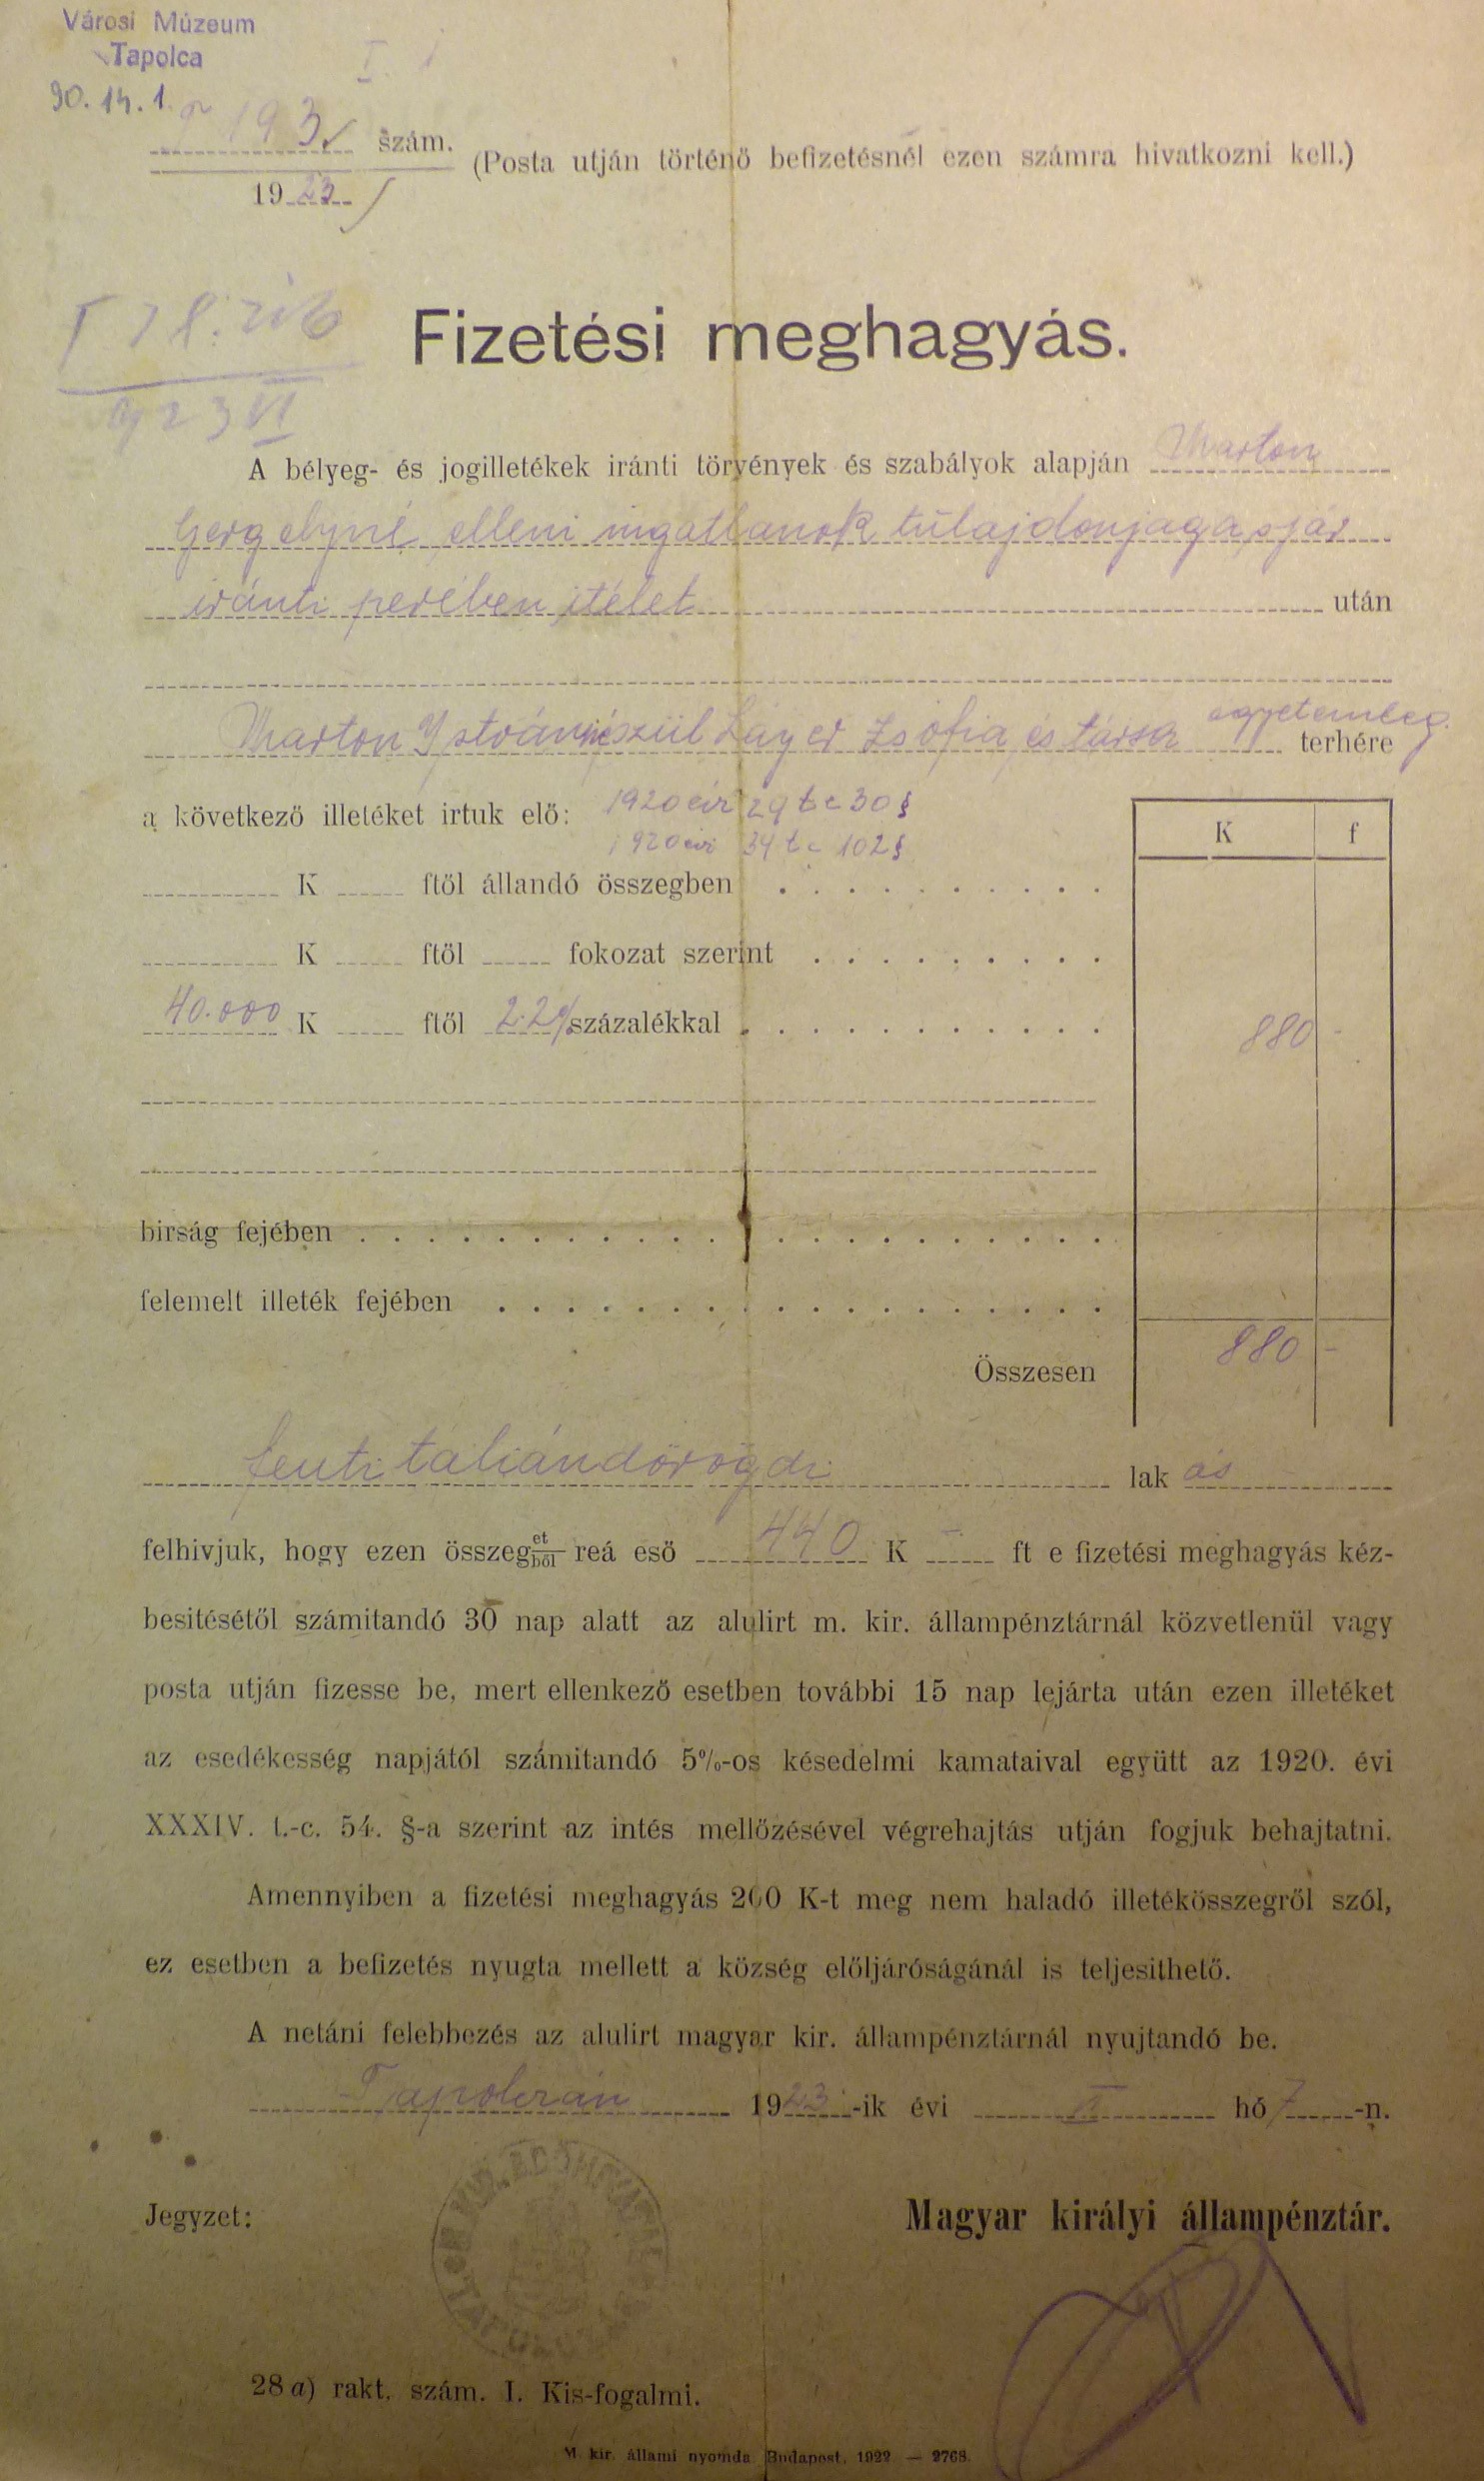 Fizetési meghagyás 1923 (Tapolcai Városi Múzeum CC BY-NC-SA)